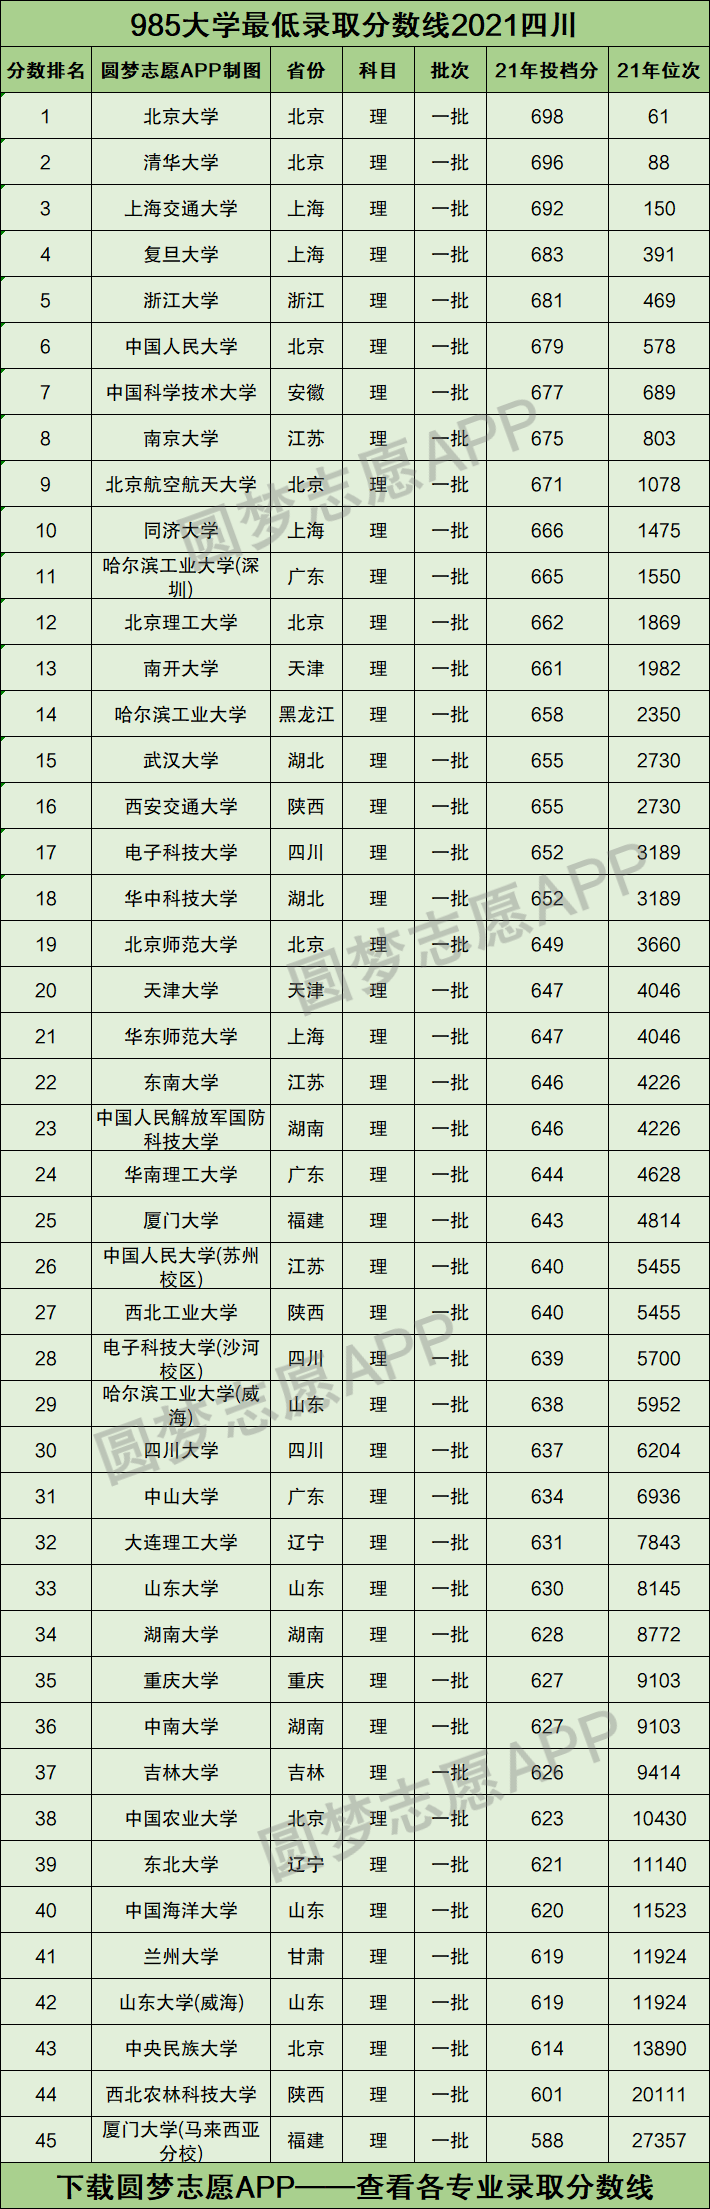 四川211大学名单图片